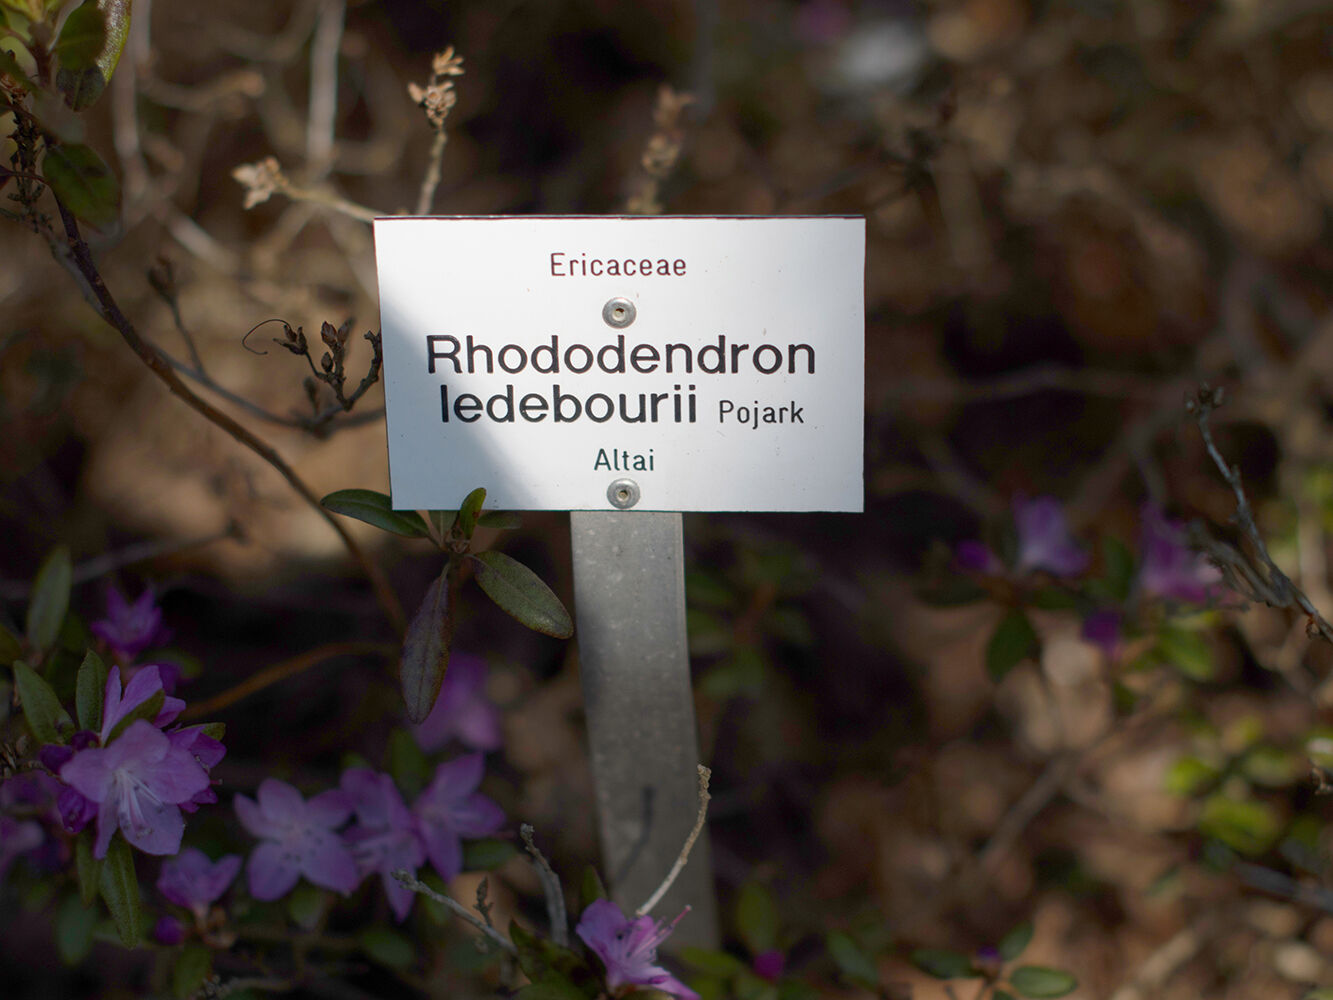 Bezeichnung Rhododendron ledebourii Pojark